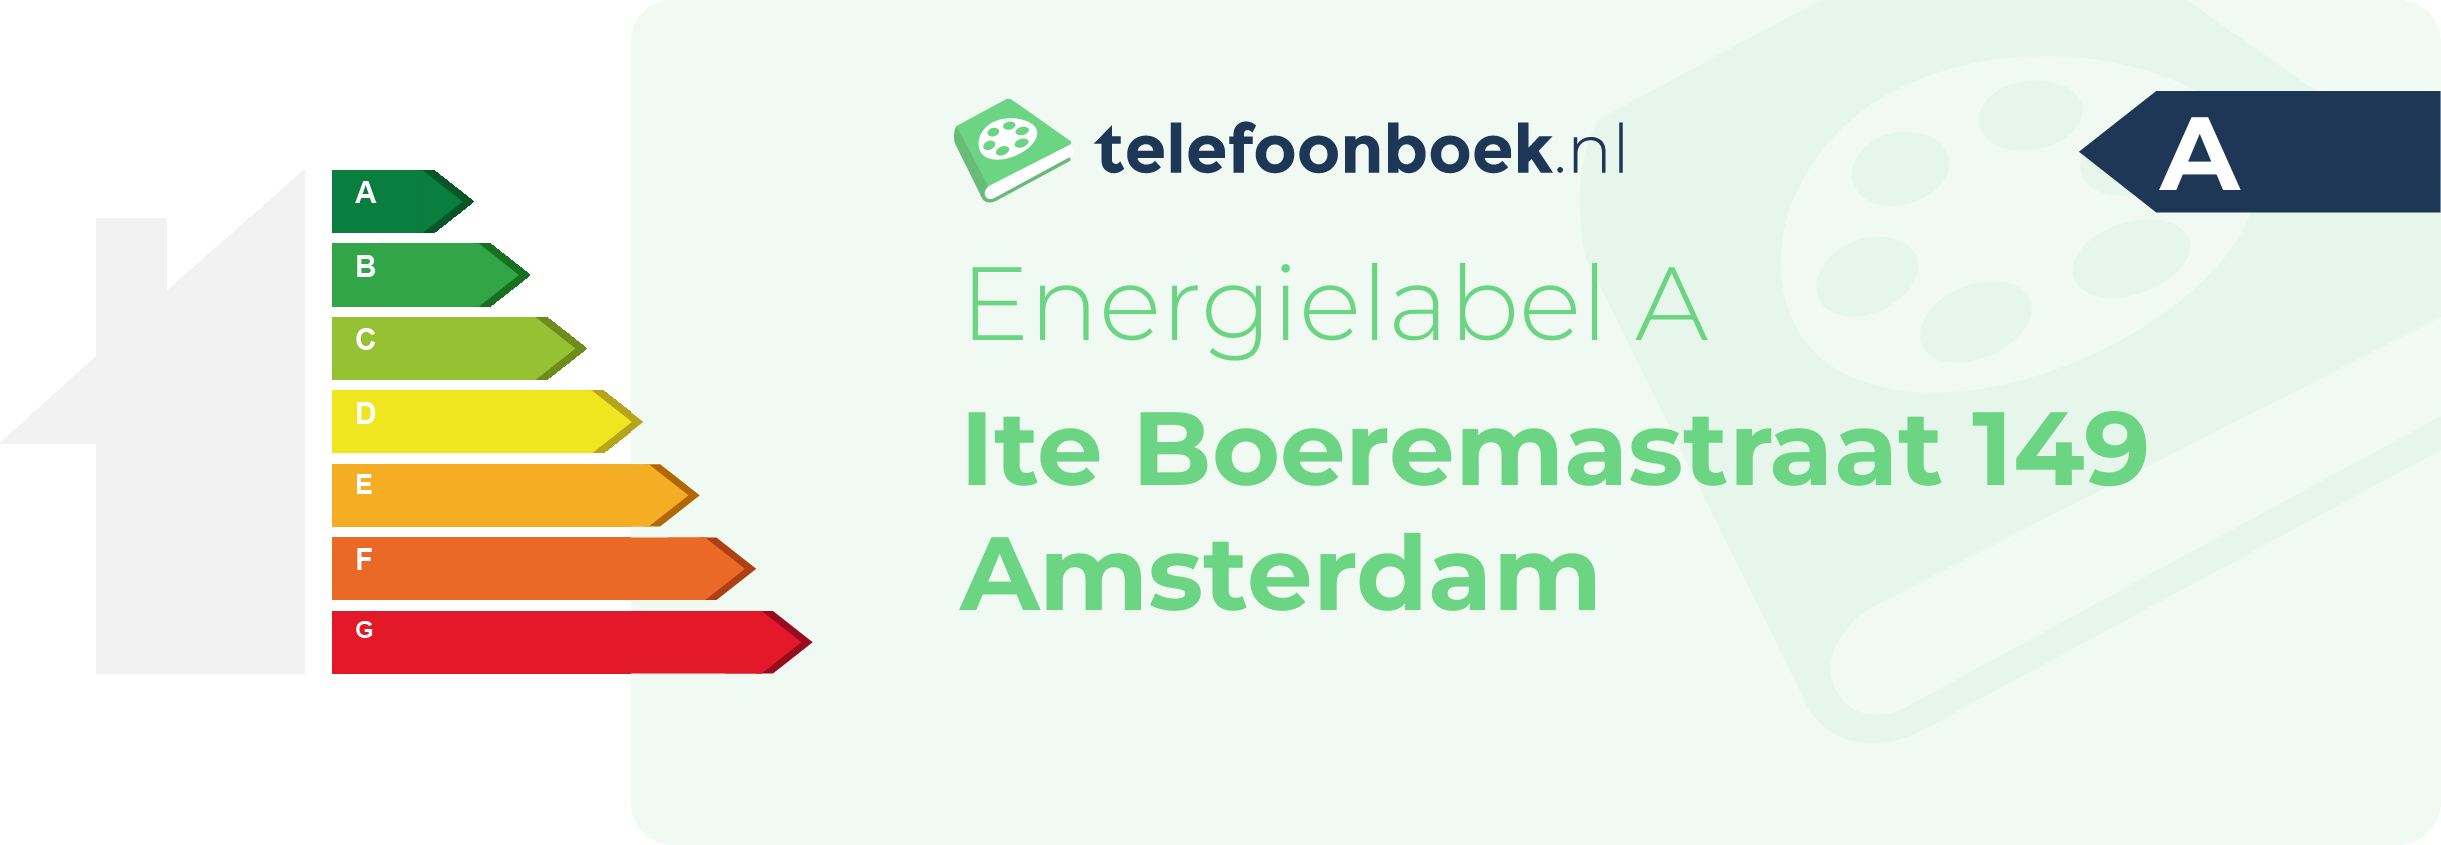 Energielabel Ite Boeremastraat 149 Amsterdam